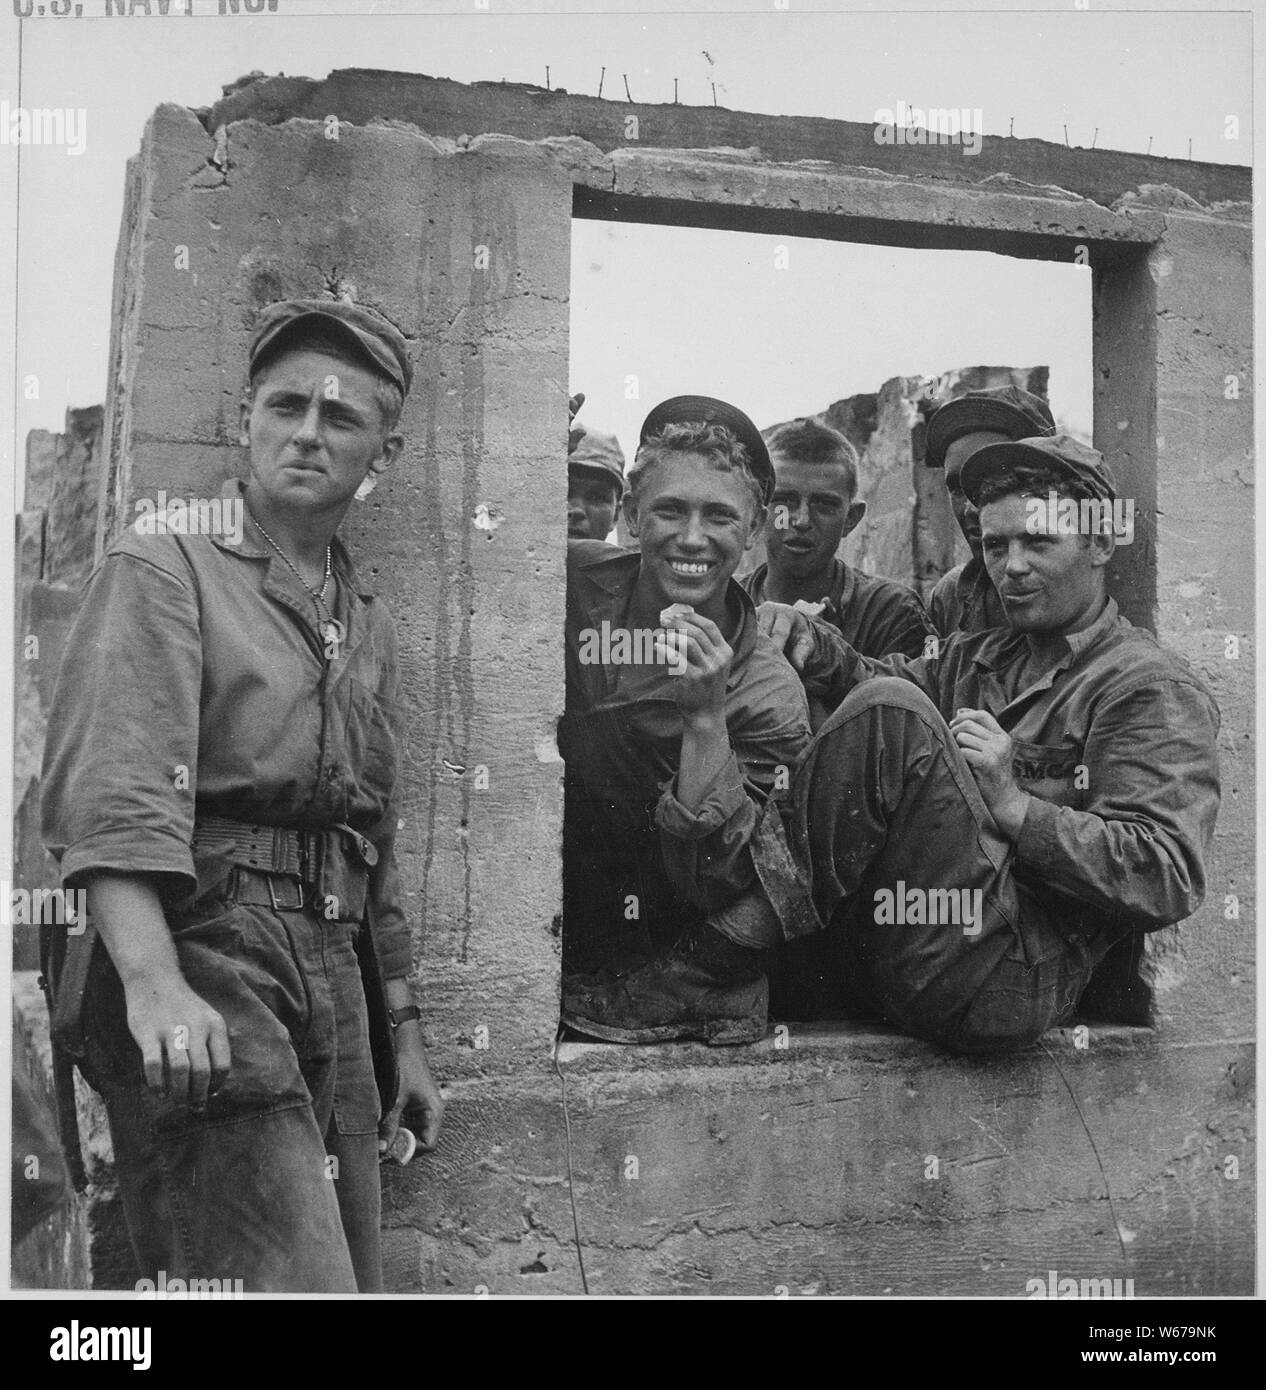 Marines pause bei Agat während der Ruhepause in den Kampf um die Rückeroberung von Guam.; Allgemeine Hinweise: Verwenden Sie Krieg und Konflikt Nummer 873 bei der Bestellung eine Reproduktion oder Anforderung von Informationen zu diesem Bild. Stockfoto